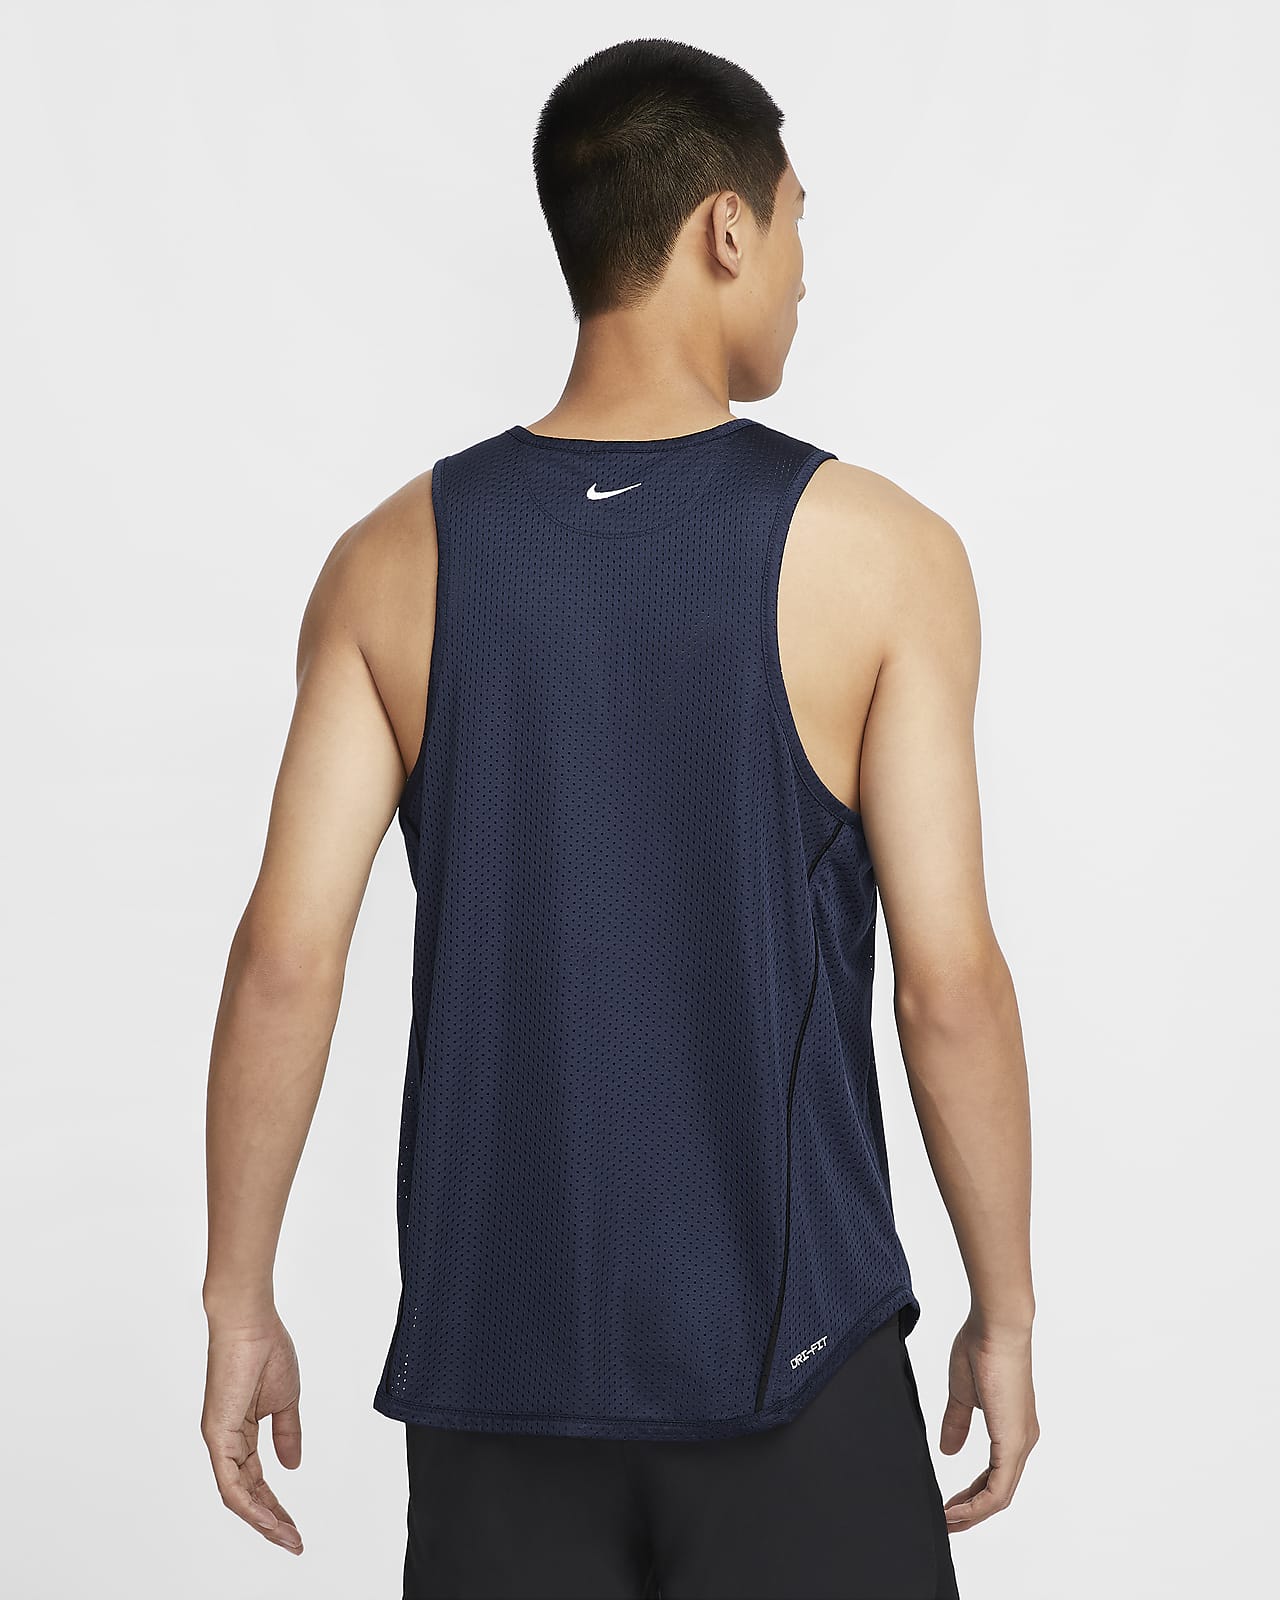 Nike Track Club Men's Dri-FIT Running Vest